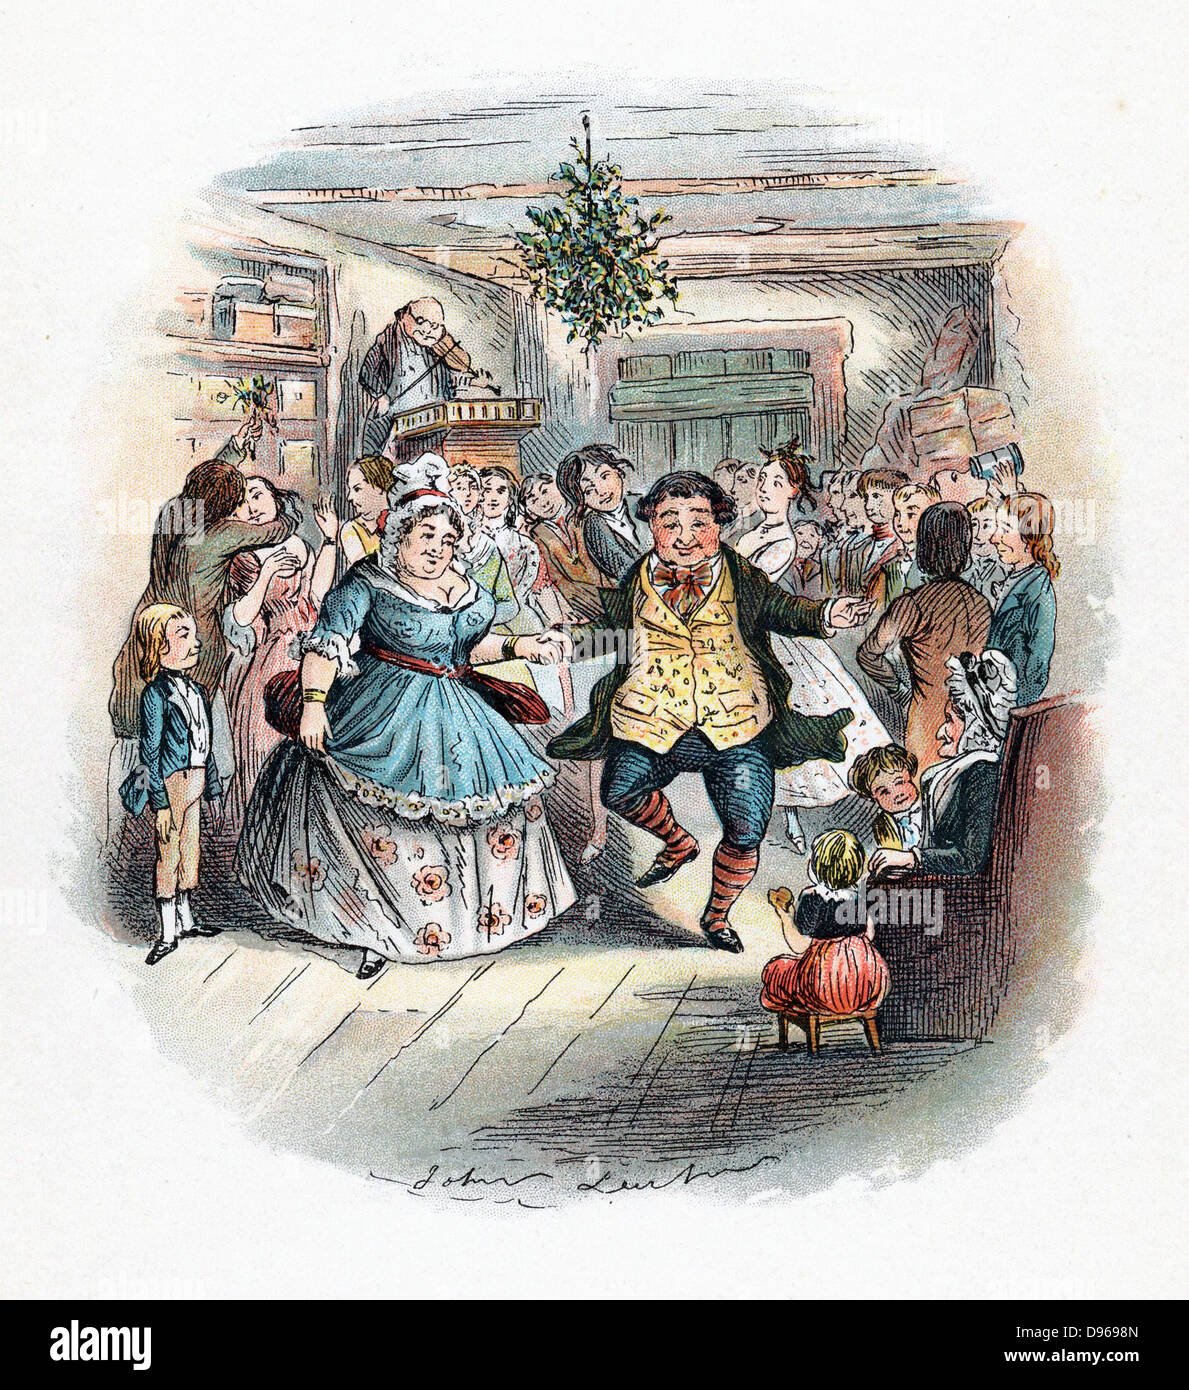 Signor Fezziwig della palla, illustrazione di John Leech per "A Christmas Carol' di Charles Dickens( Londra,1843). Questa novella è stata la prima e più popolare di Dickens' Storie di Natale. Scena dalla fine del libro mostra jollity e bonhomie, con fiddler (violinista) giocando per ballerini. Baciare sotto il vischio, sinistra e decorazione evergreen pendenti dal soffitto sono vestigia del periodo pre-cristiano riti d'inverno. Foto Stock